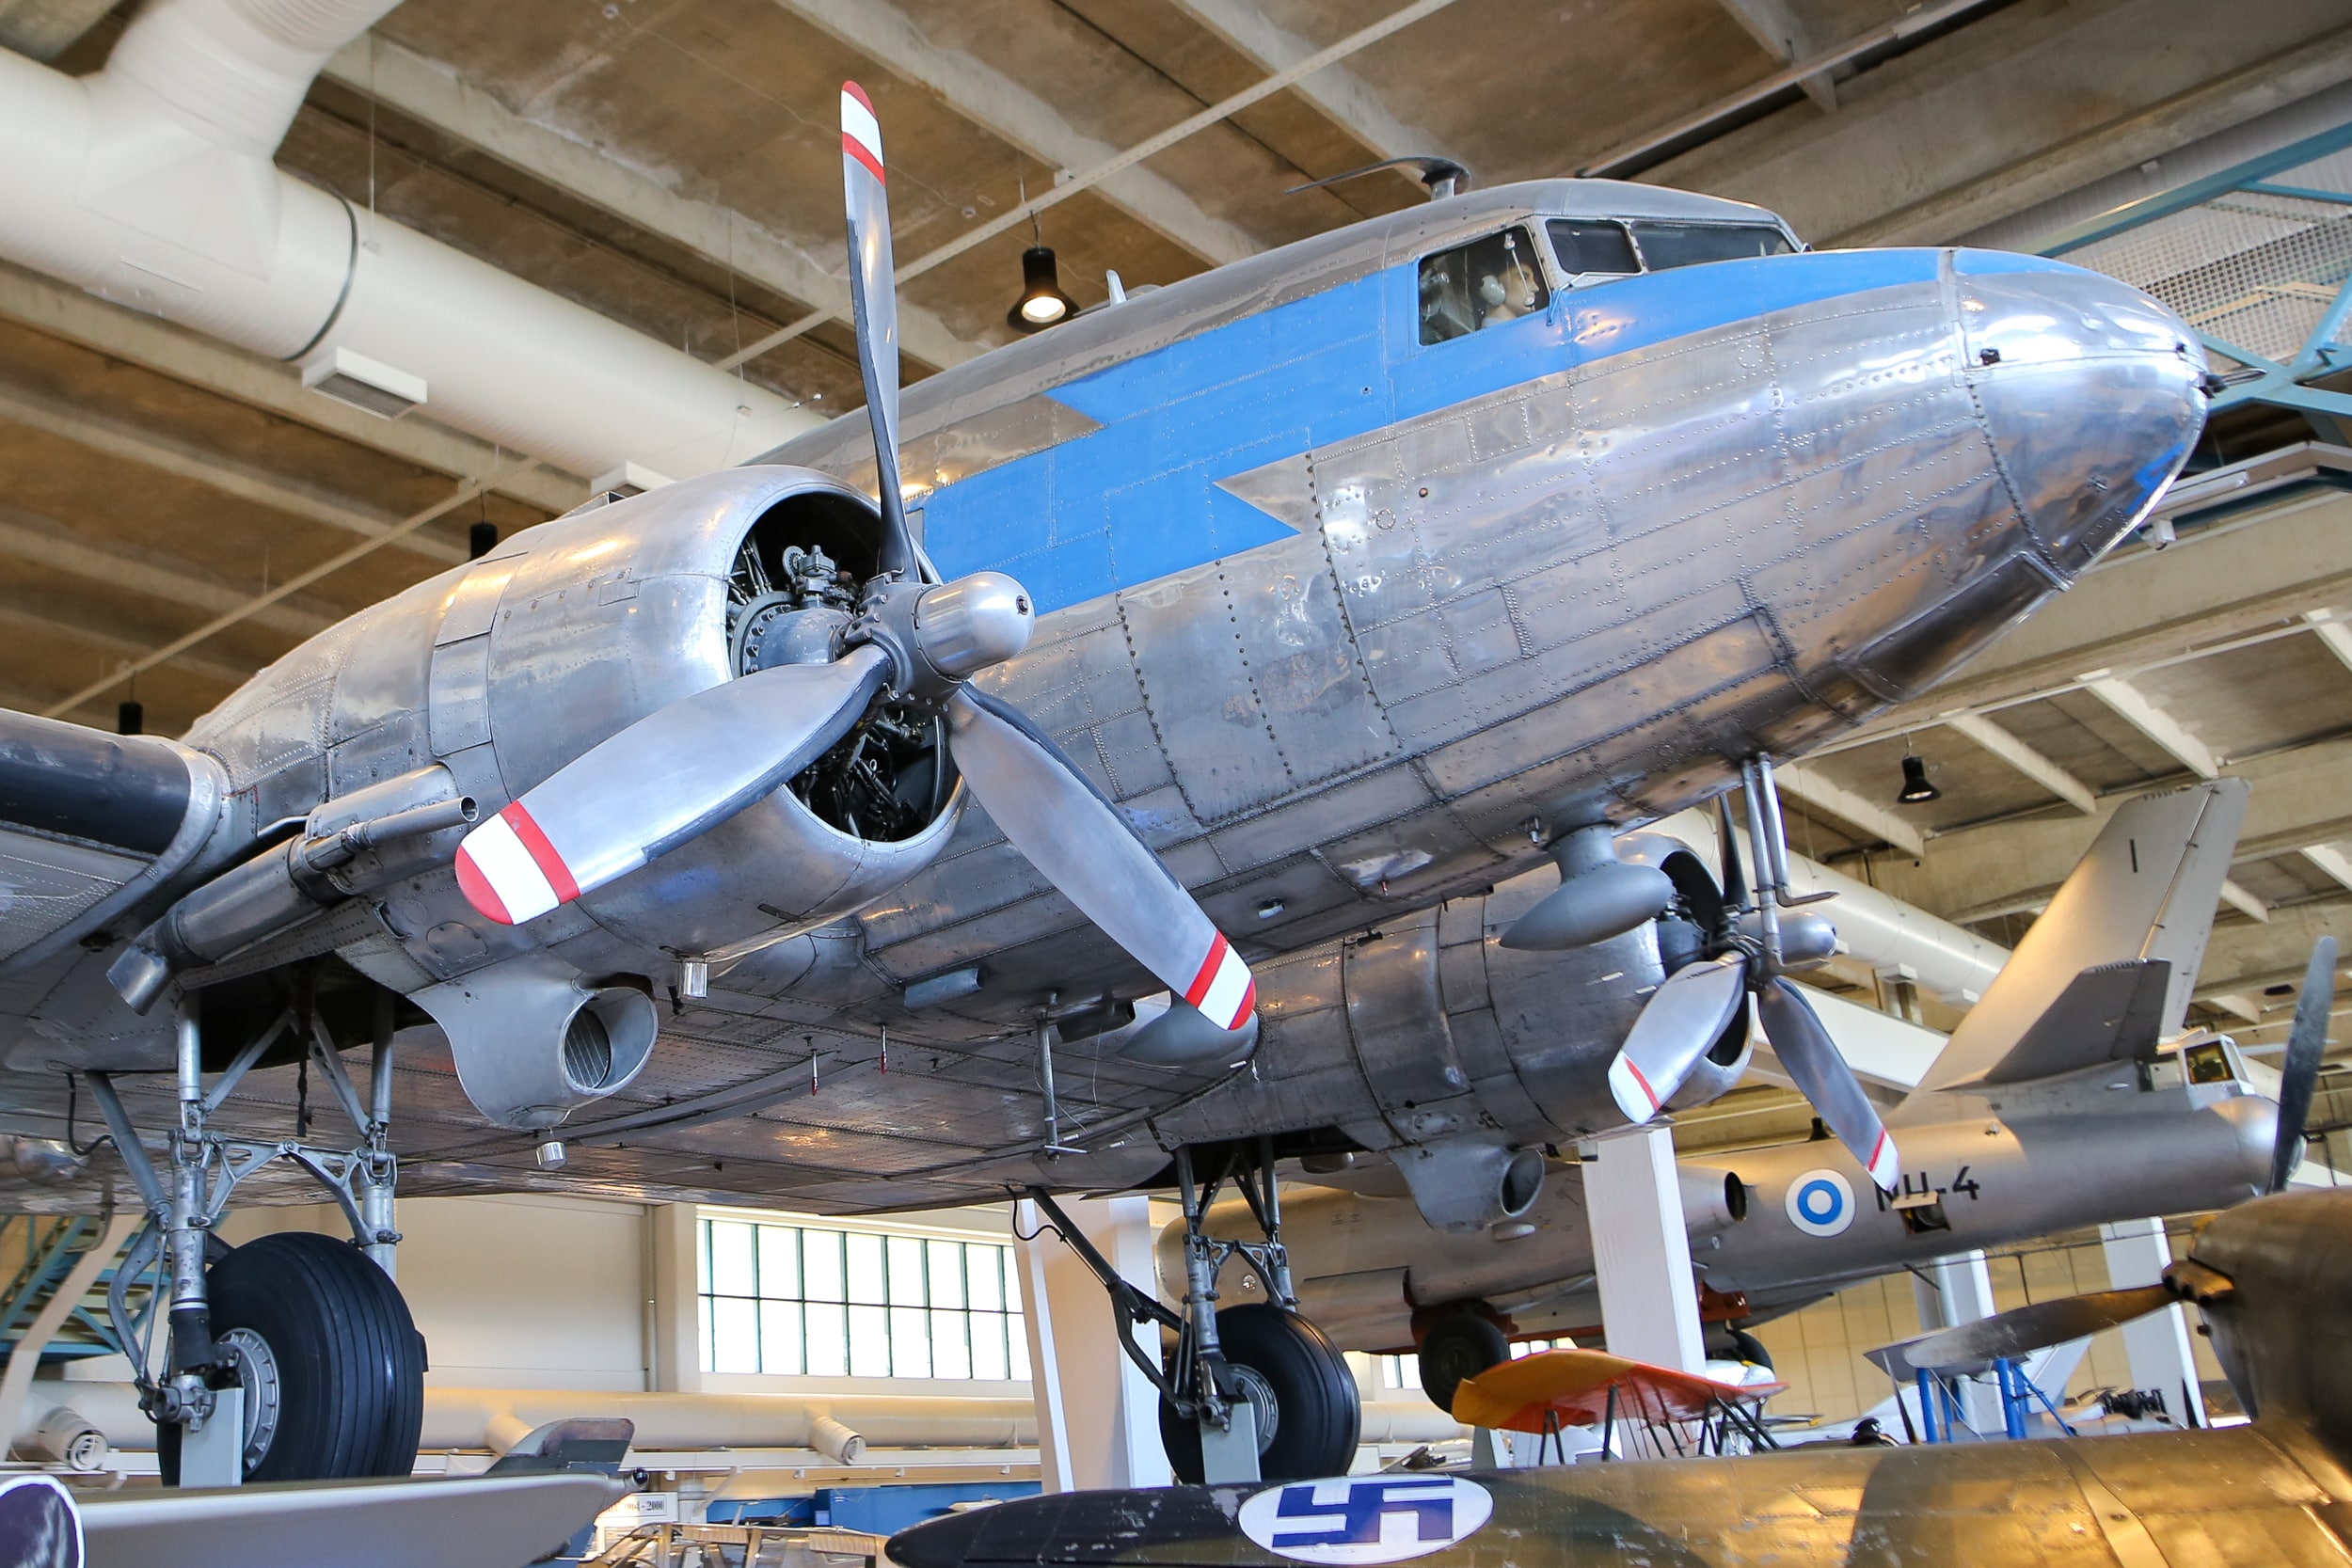 Suuri hopeanvärinen DC-3-lentokone museon näyttelyssä. Metallisissa potkureissa on kolme lapaa.